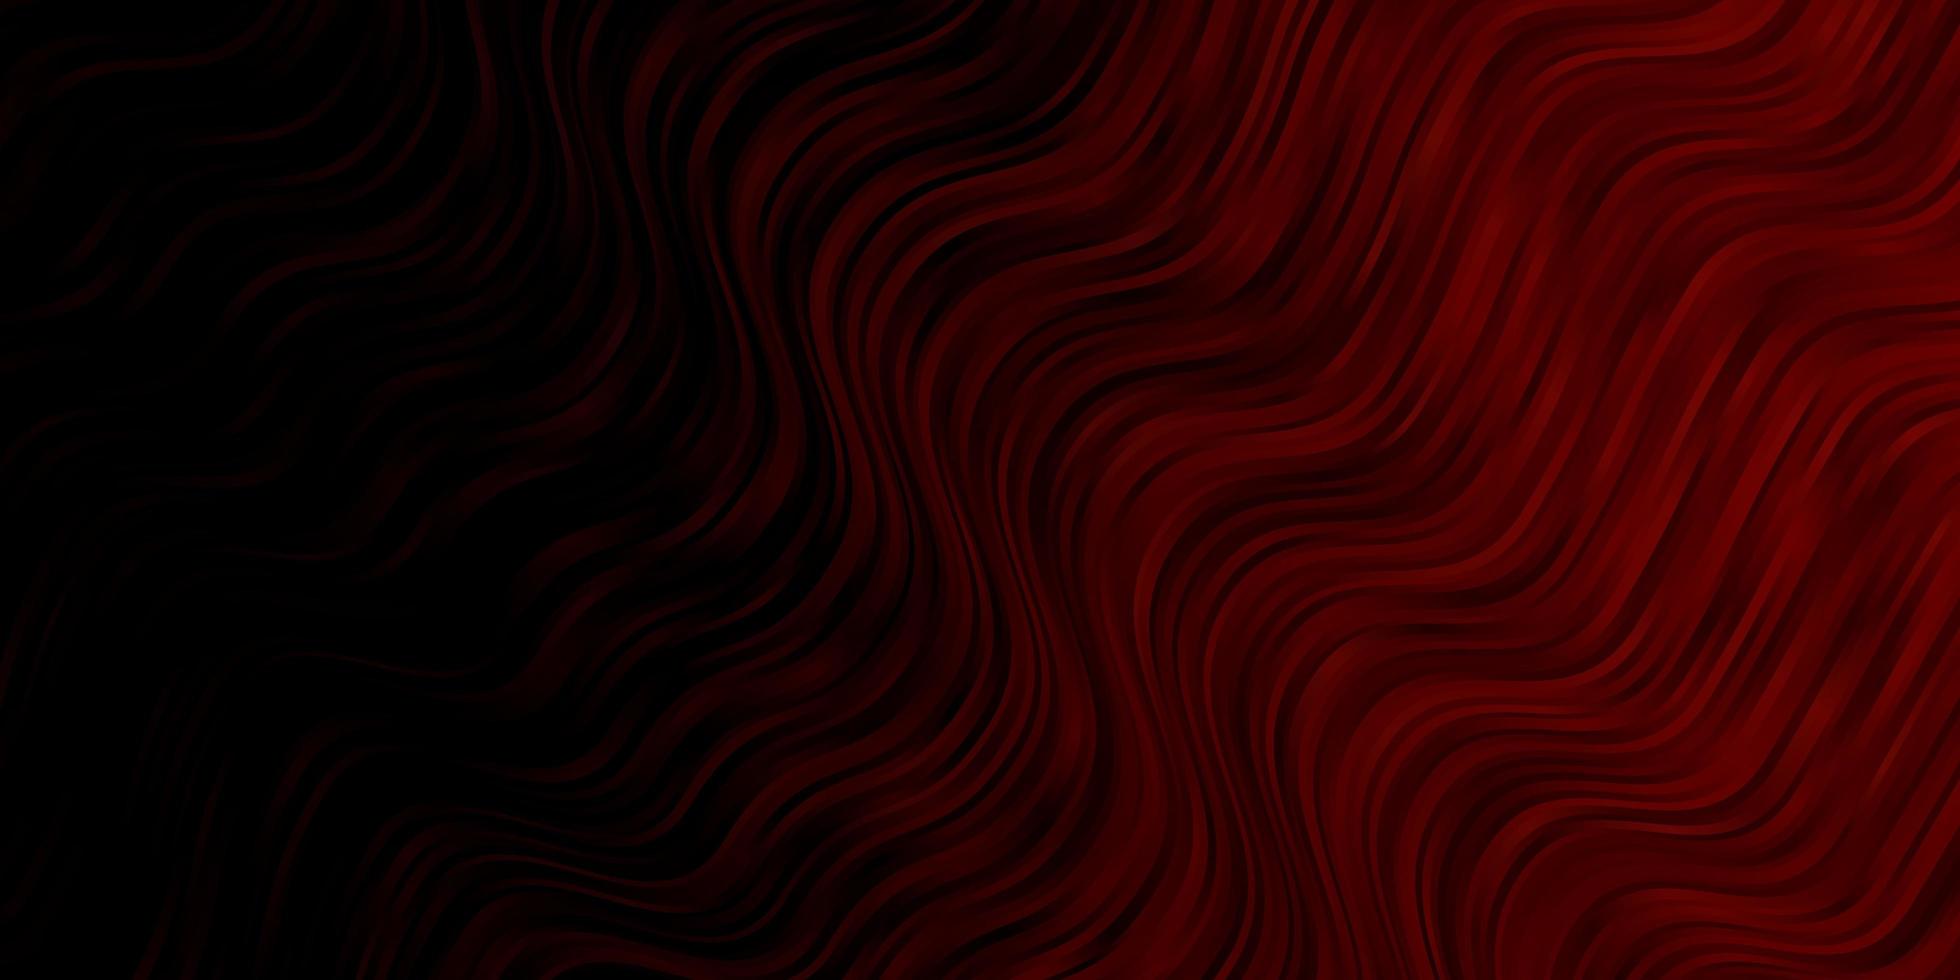 Diseño vectorial rojo oscuro con arco circular. muestra brillante con formas y líneas curvas de colores. patrón para comerciales, anuncios. vector